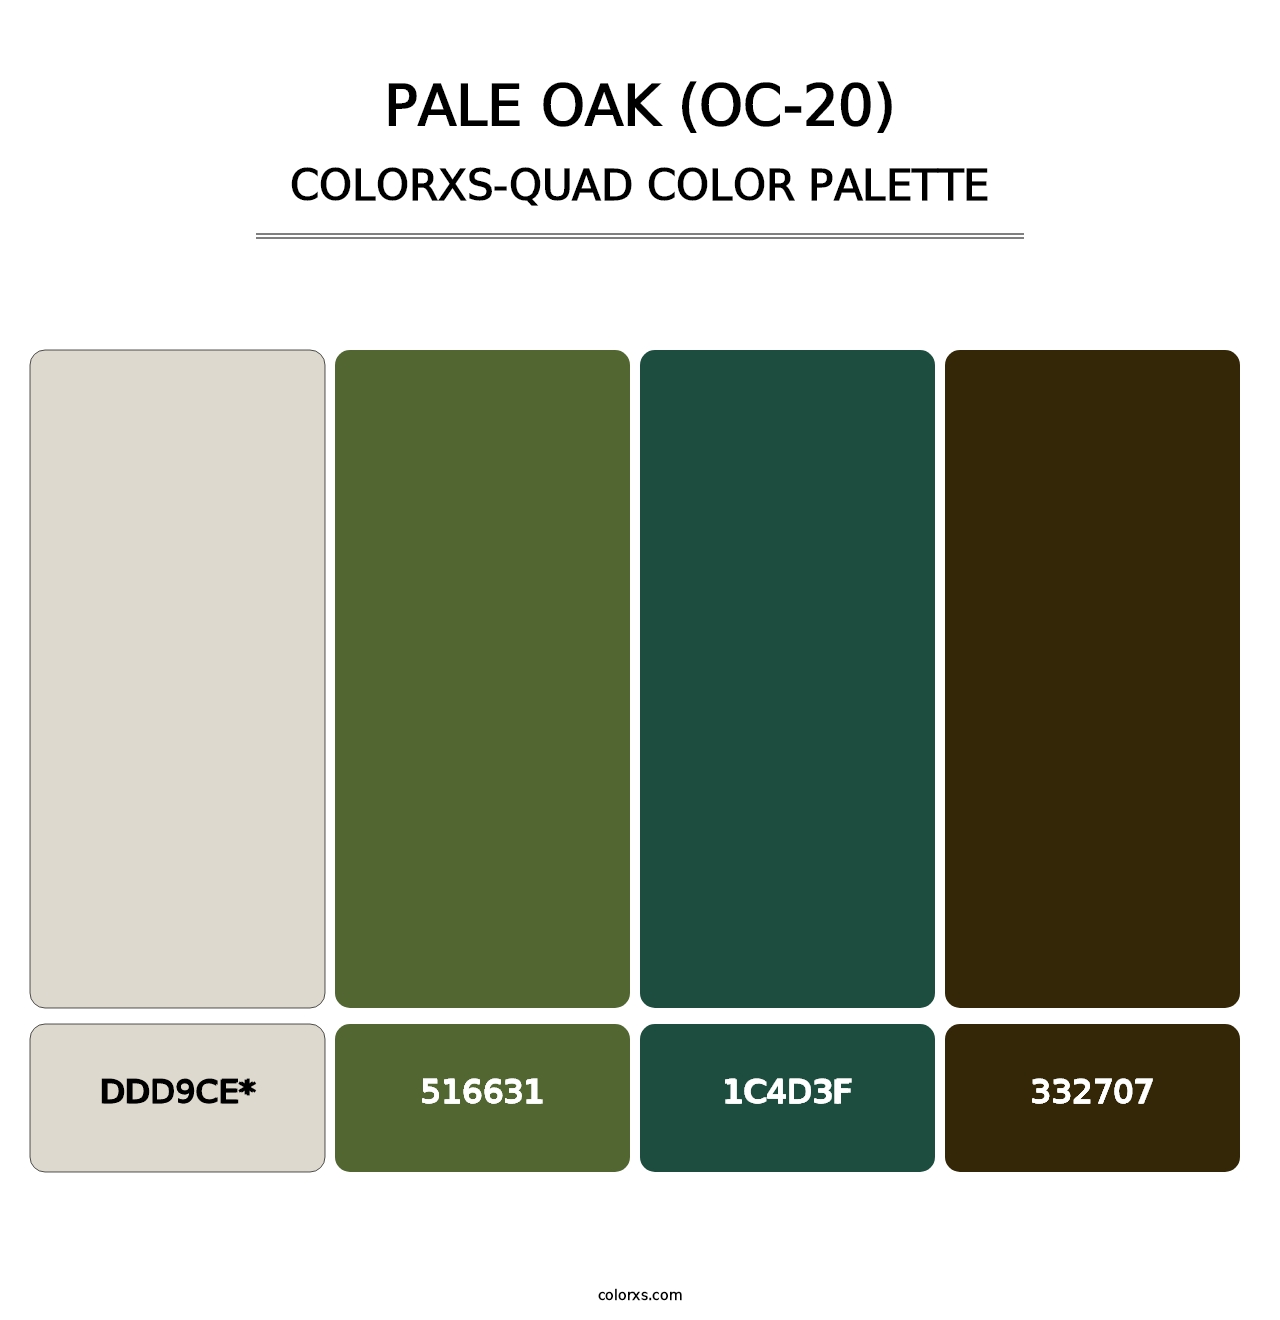 Pale Oak (OC-20) - Colorxs Quad Palette